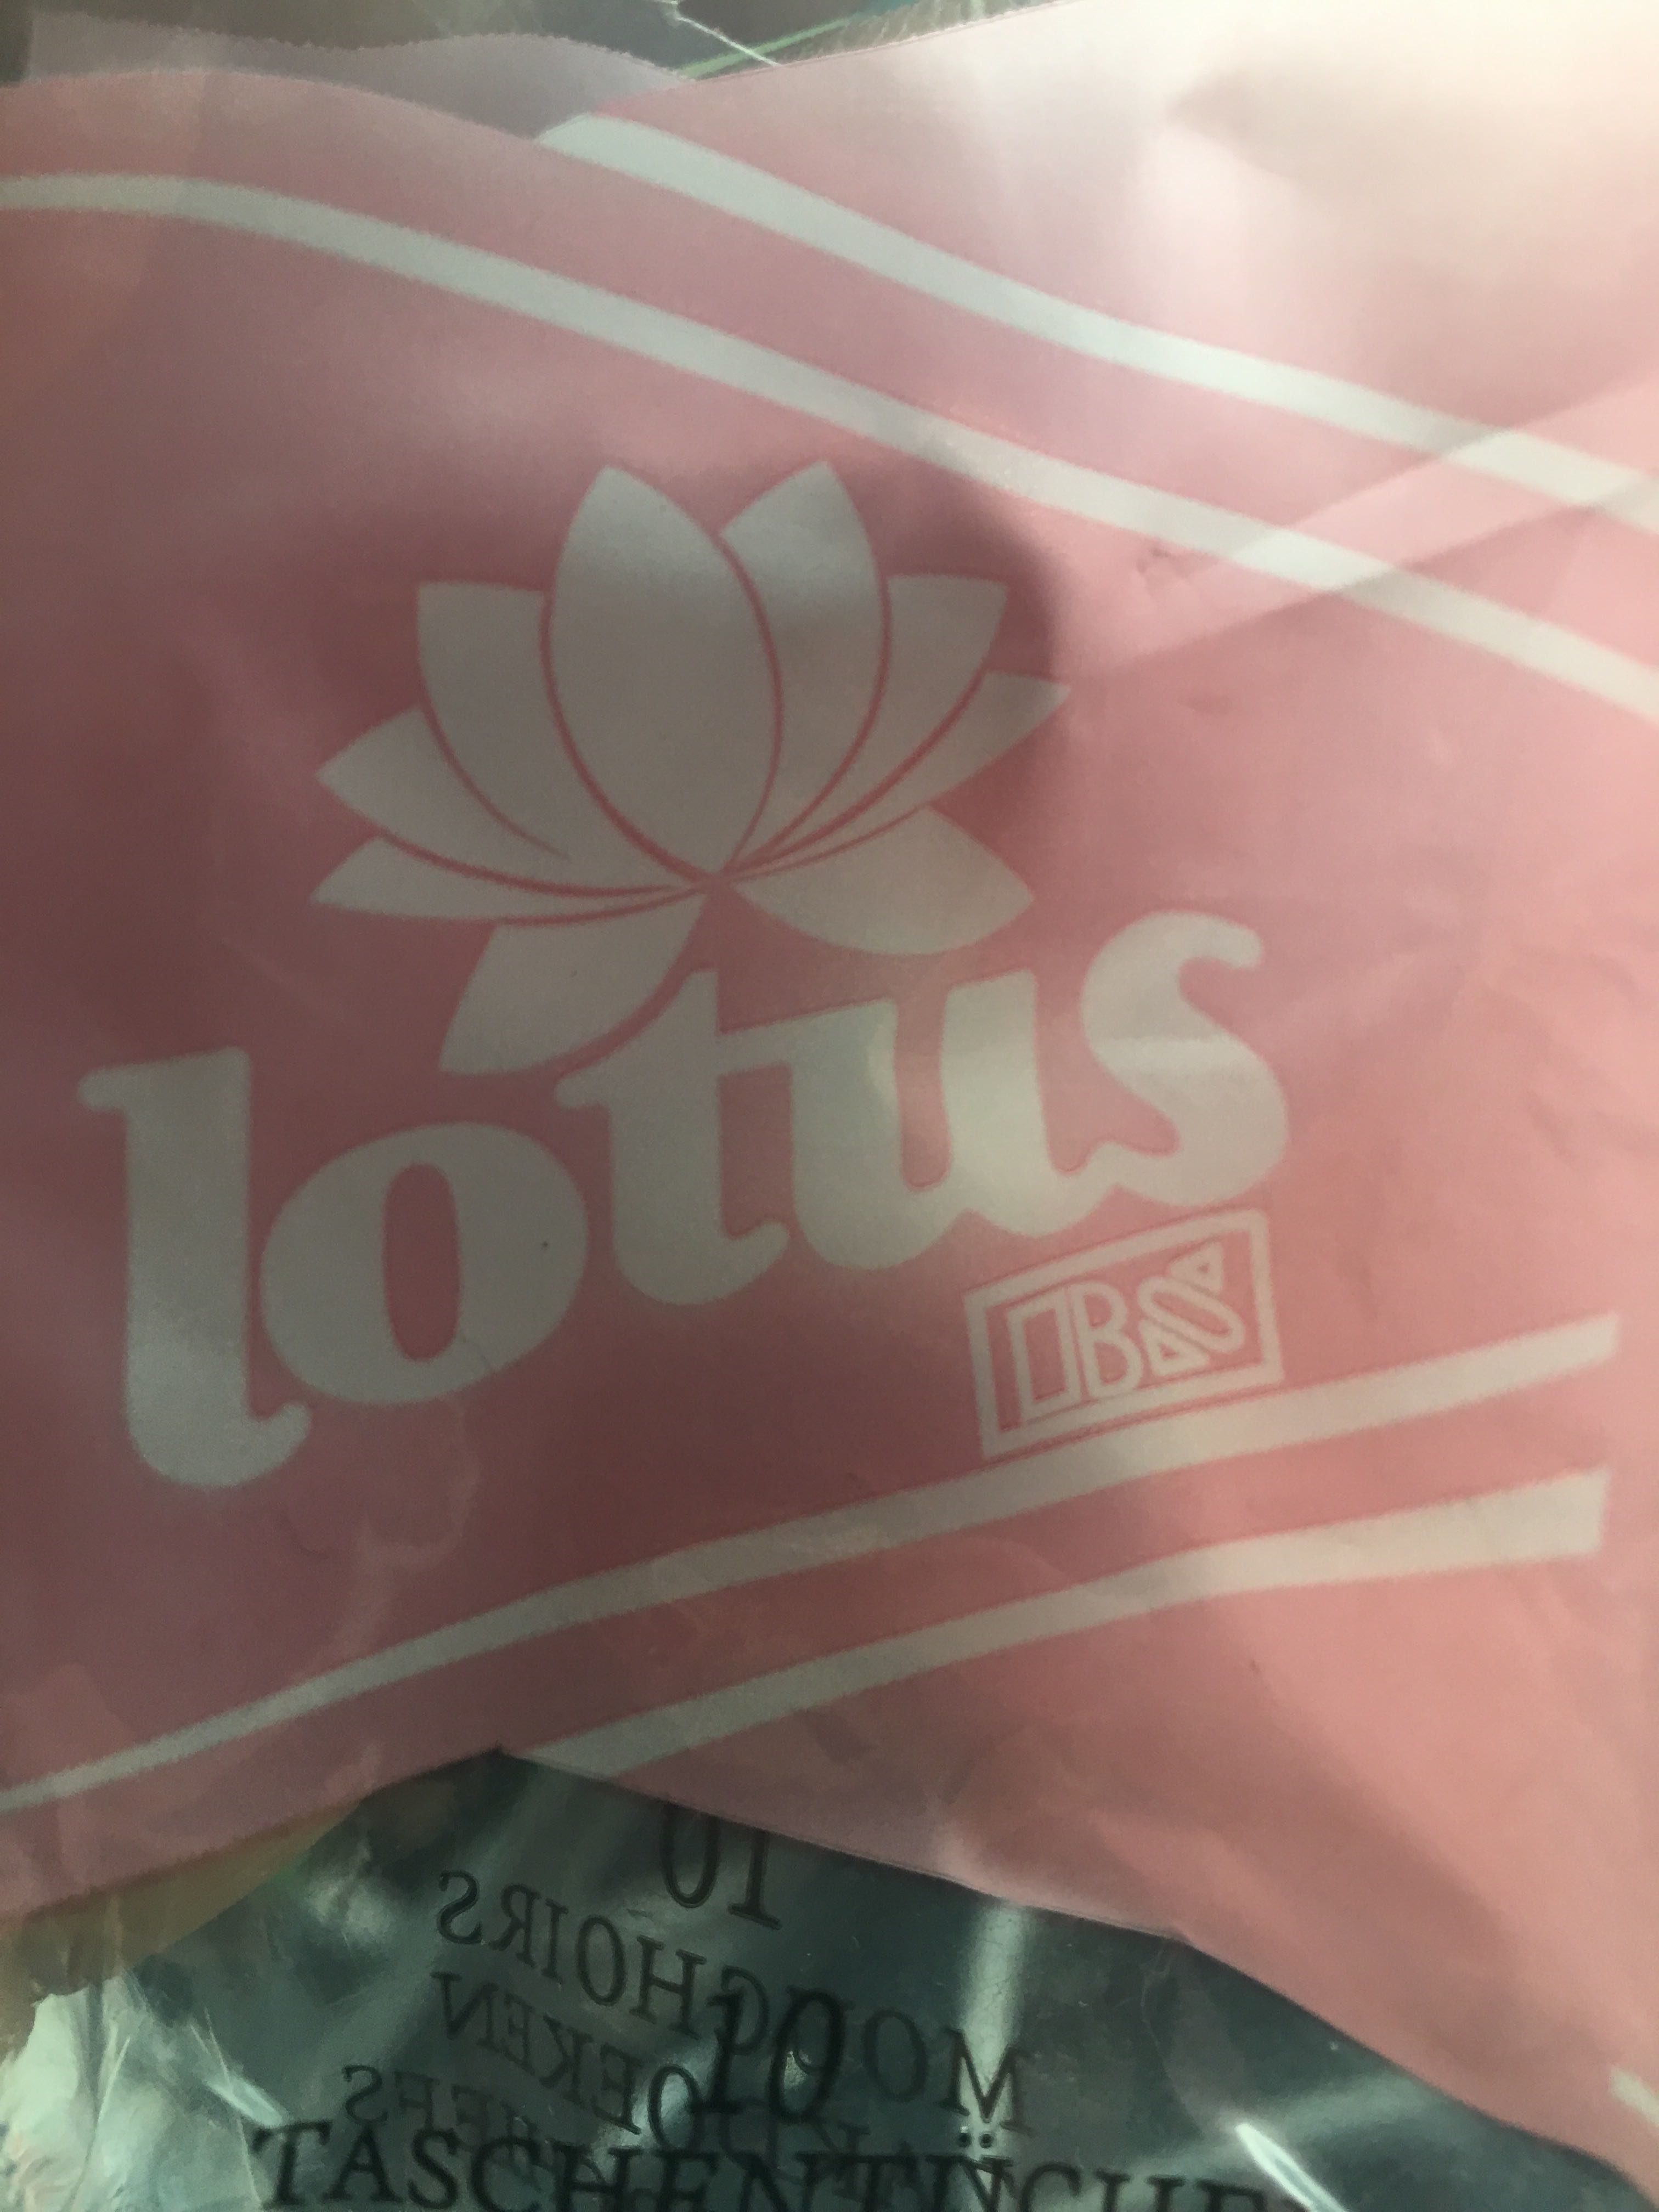 Lotus mouchoir en papier - Produto - fr